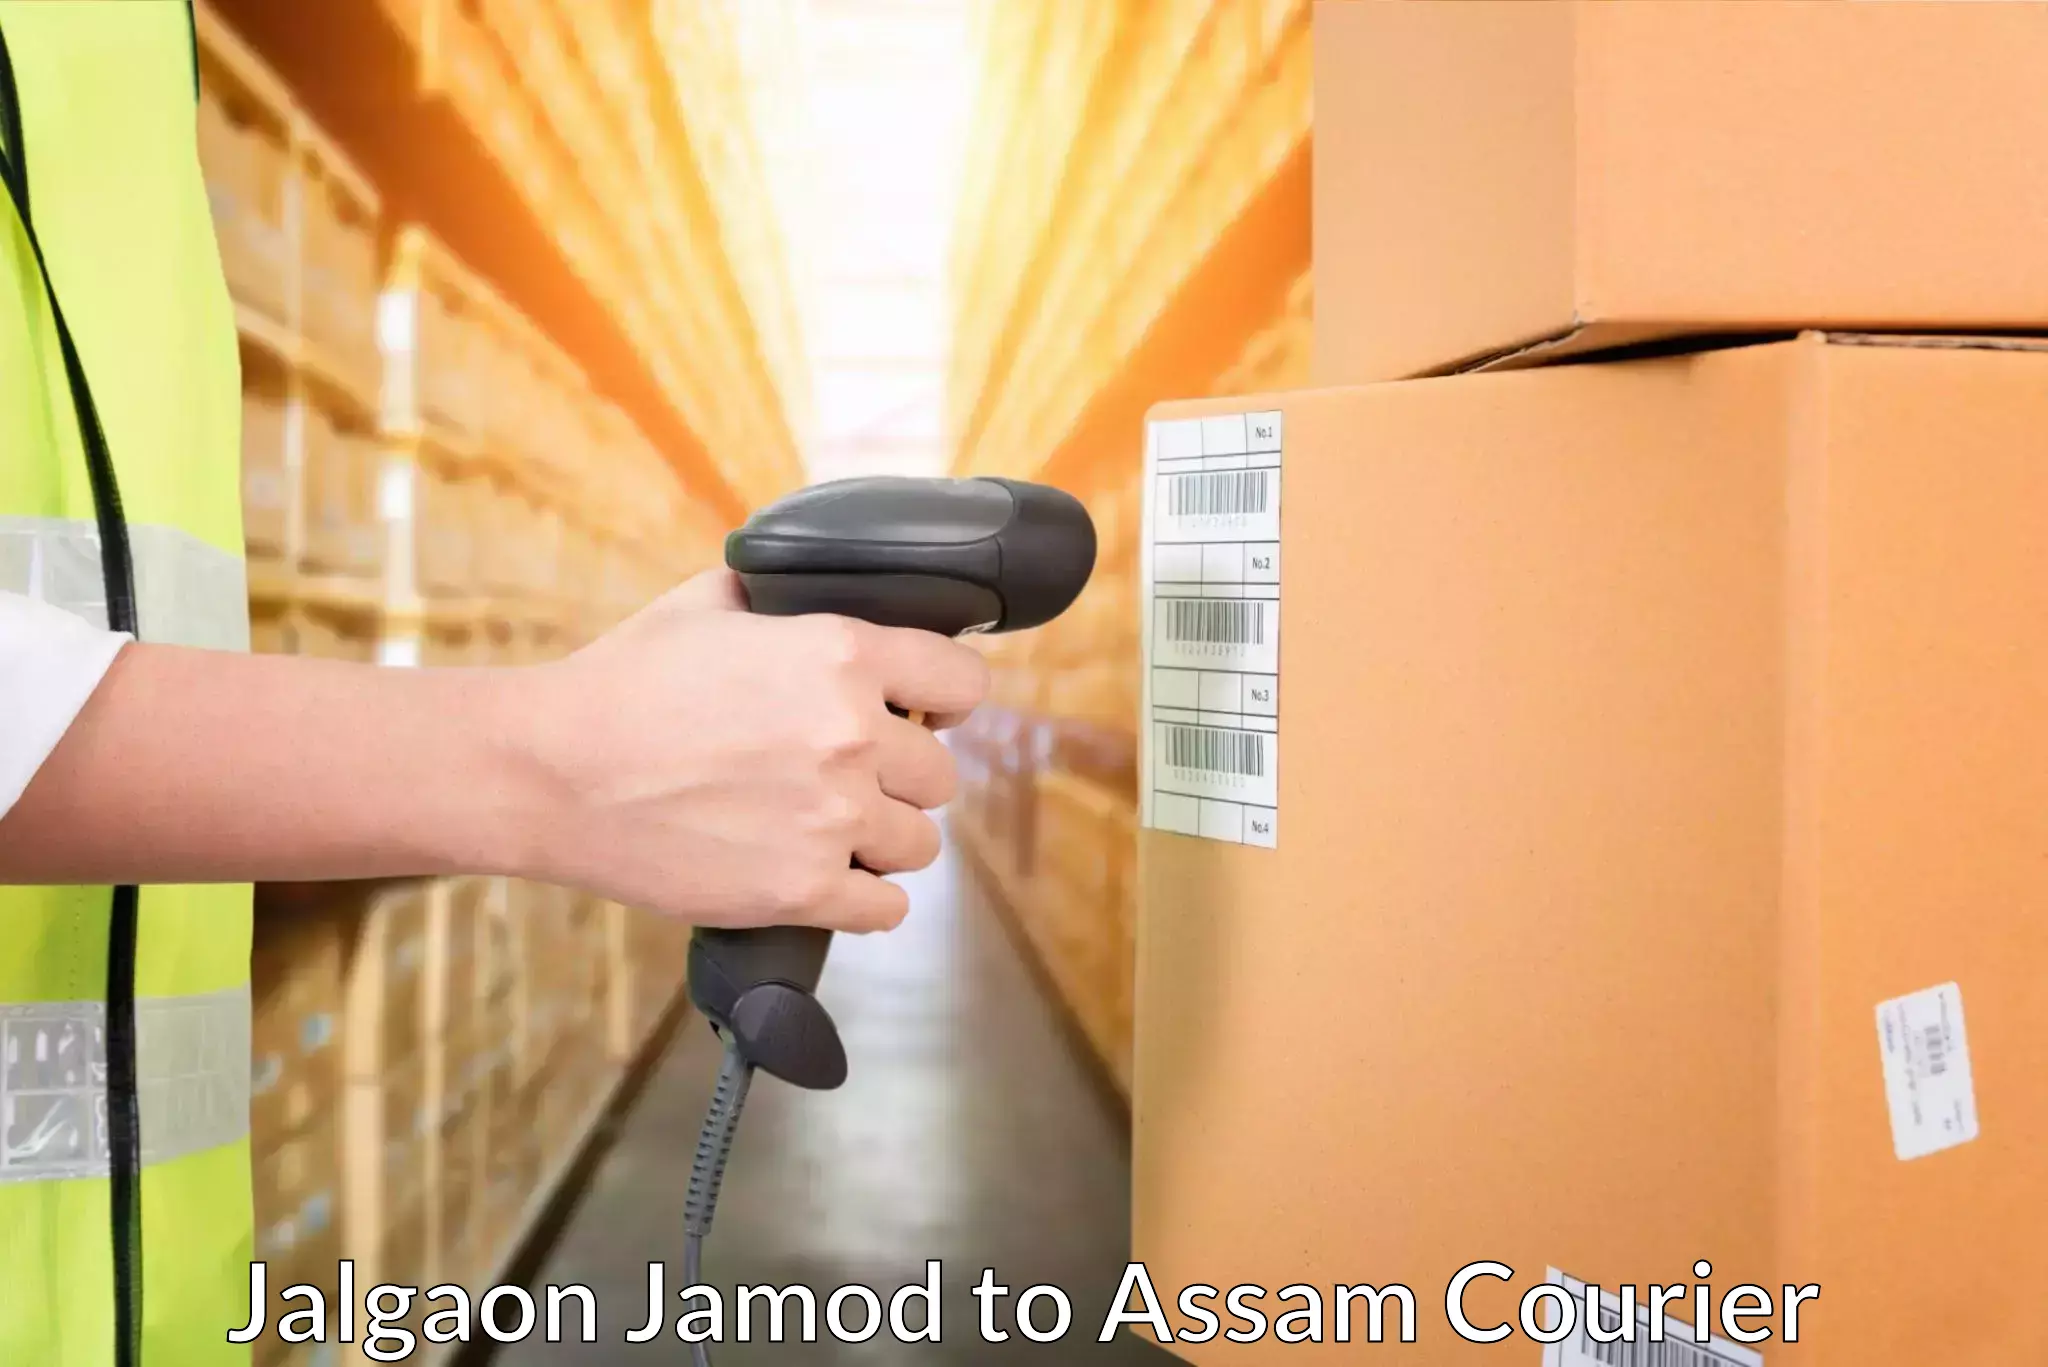 Global parcel delivery Jalgaon Jamod to Moranhat